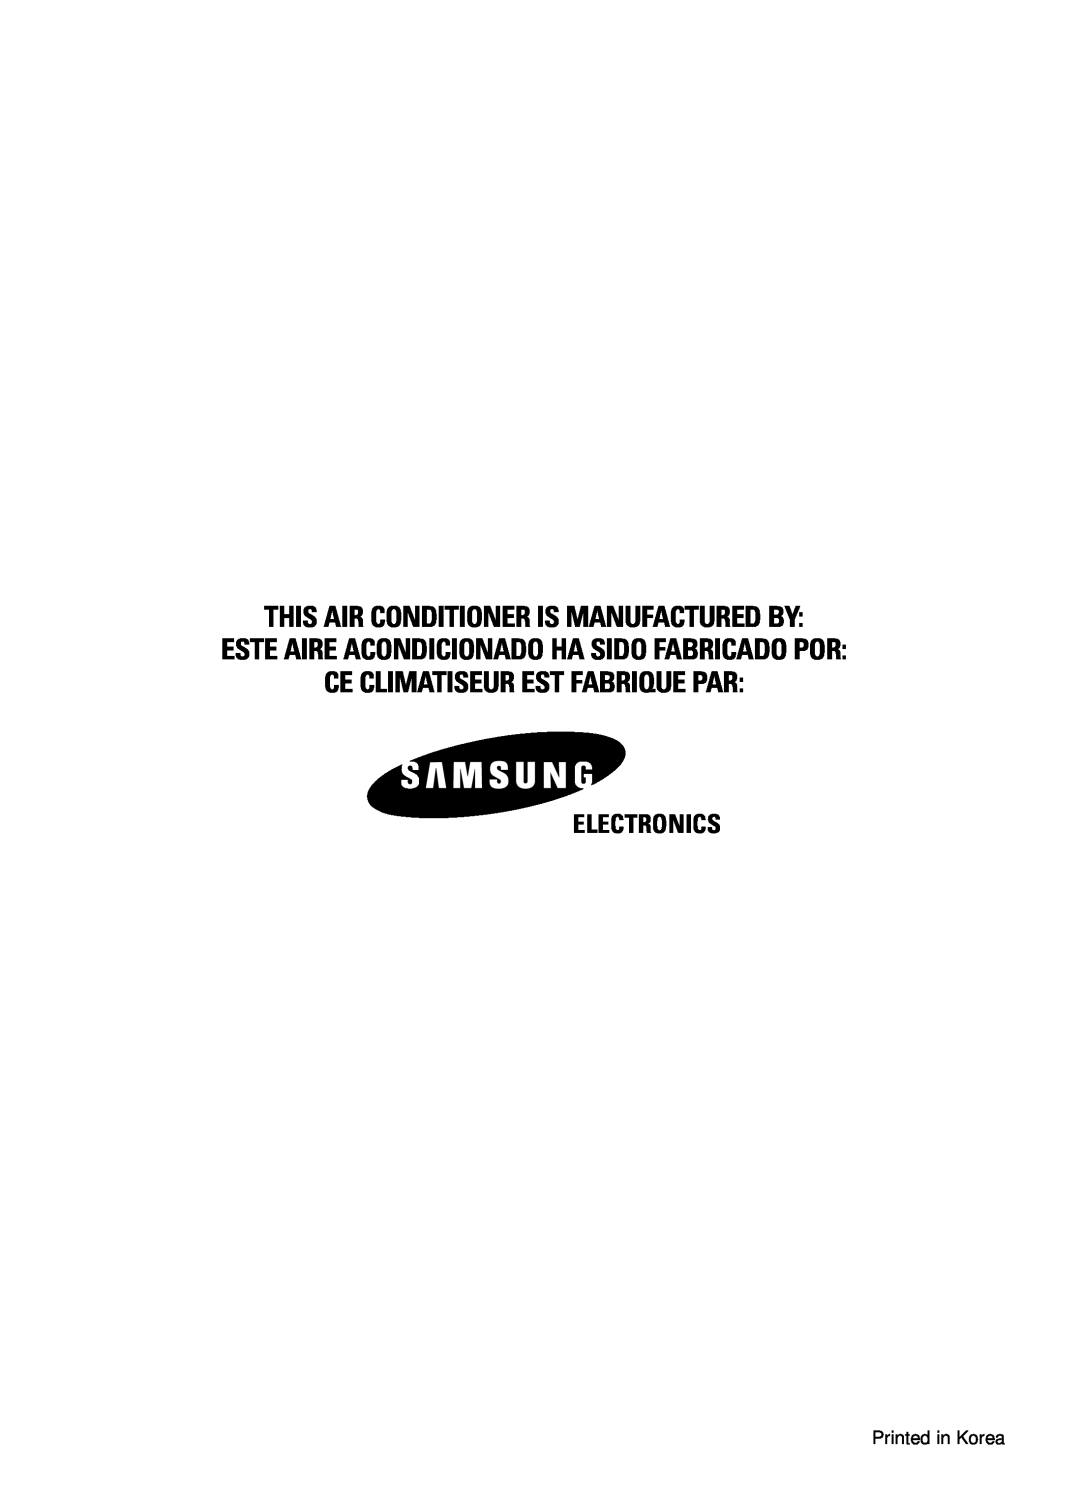 Samsung AVMBH032CA0 Electronics, This Air Conditioner Is Manufactured By, Este Aire Acondicionado Ha Sido Fabricado Por 